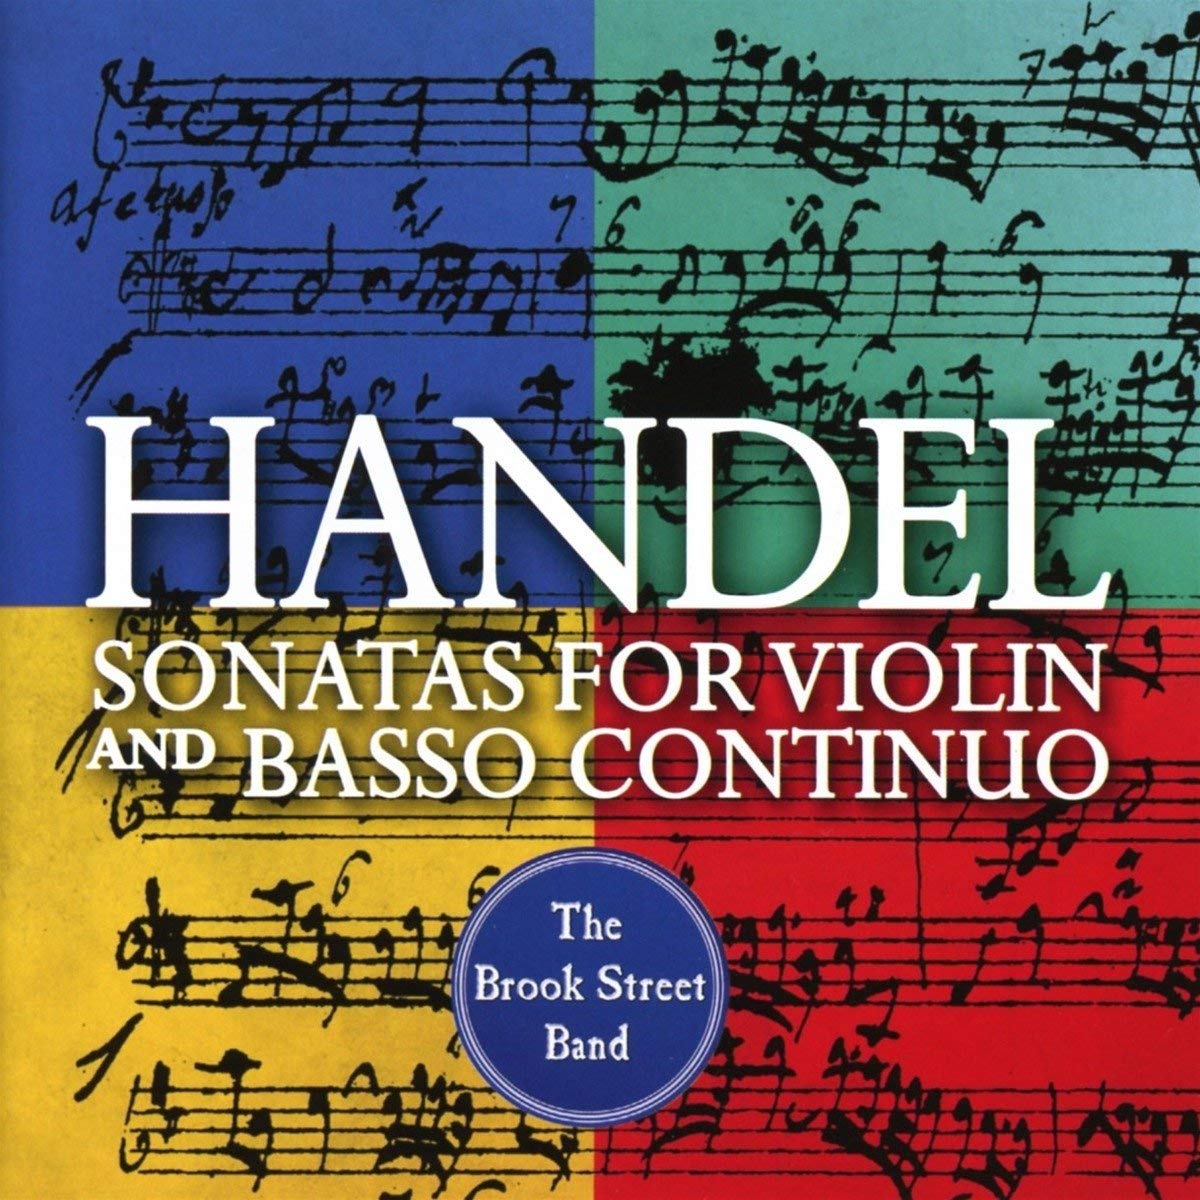 Handel sonatas